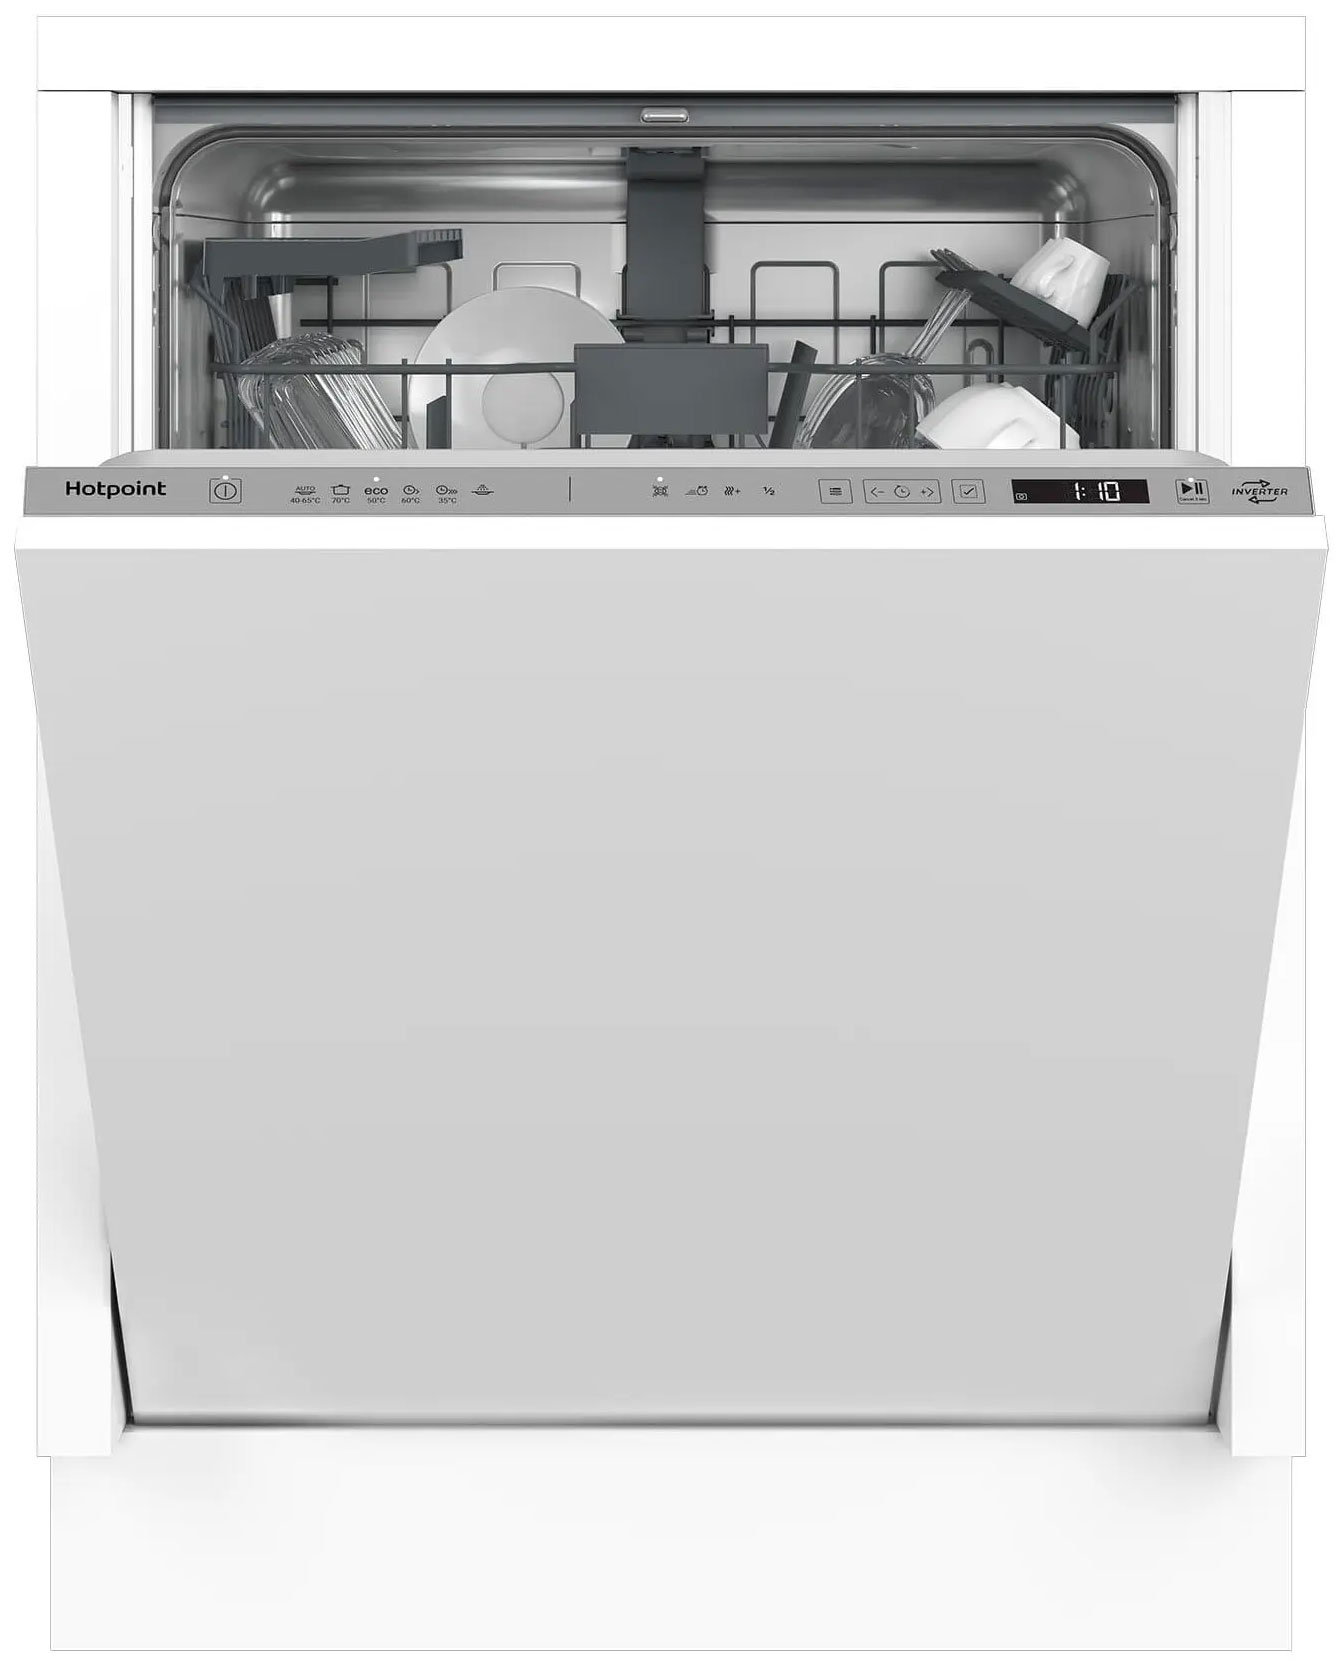 Встраиваемая посудомоечная машина Hotpoint HI 4D66 DW встраиваемая посудомоечная машина hotpoint hi 5d83 dwt